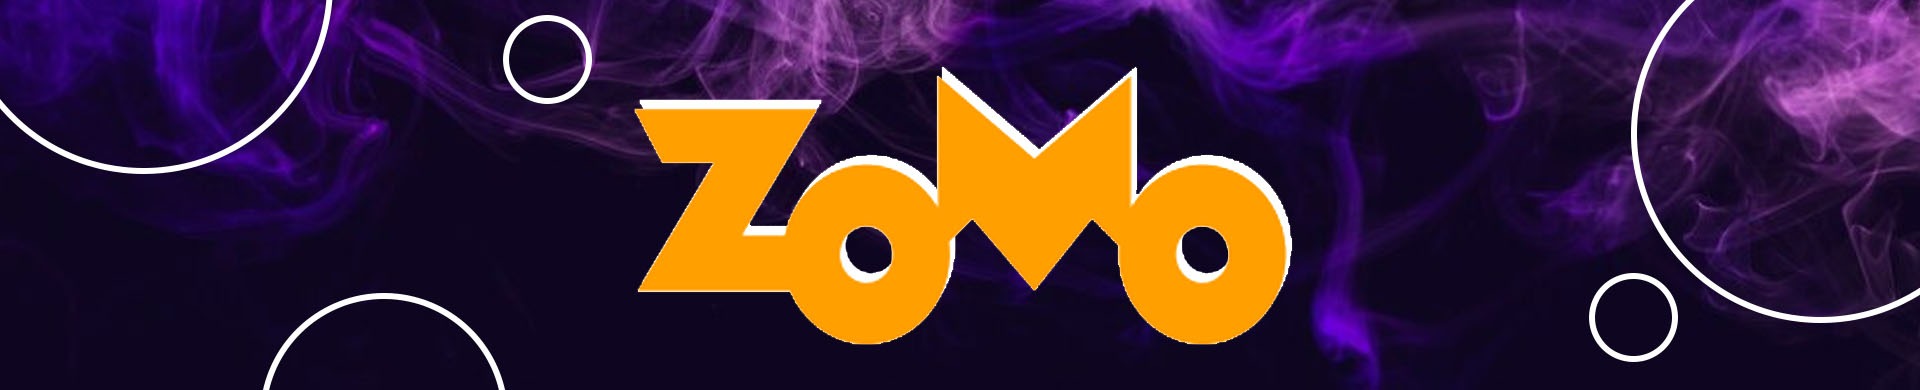 O que é Zomo?